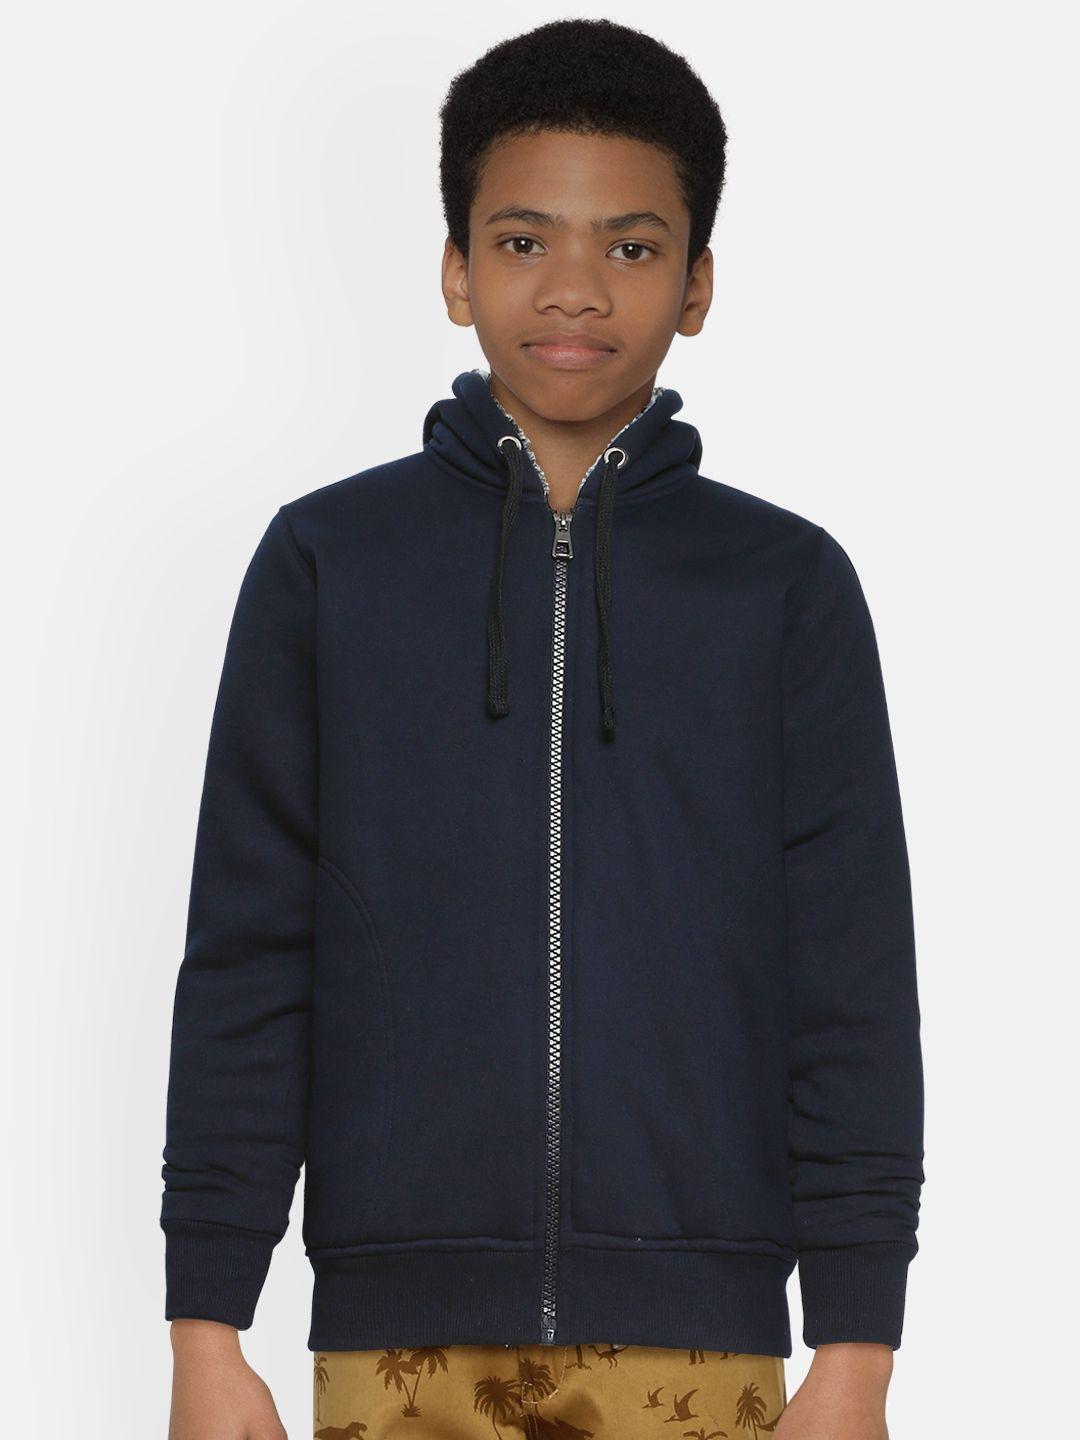 adbucks boys navy blue solid hooded sweatshirt